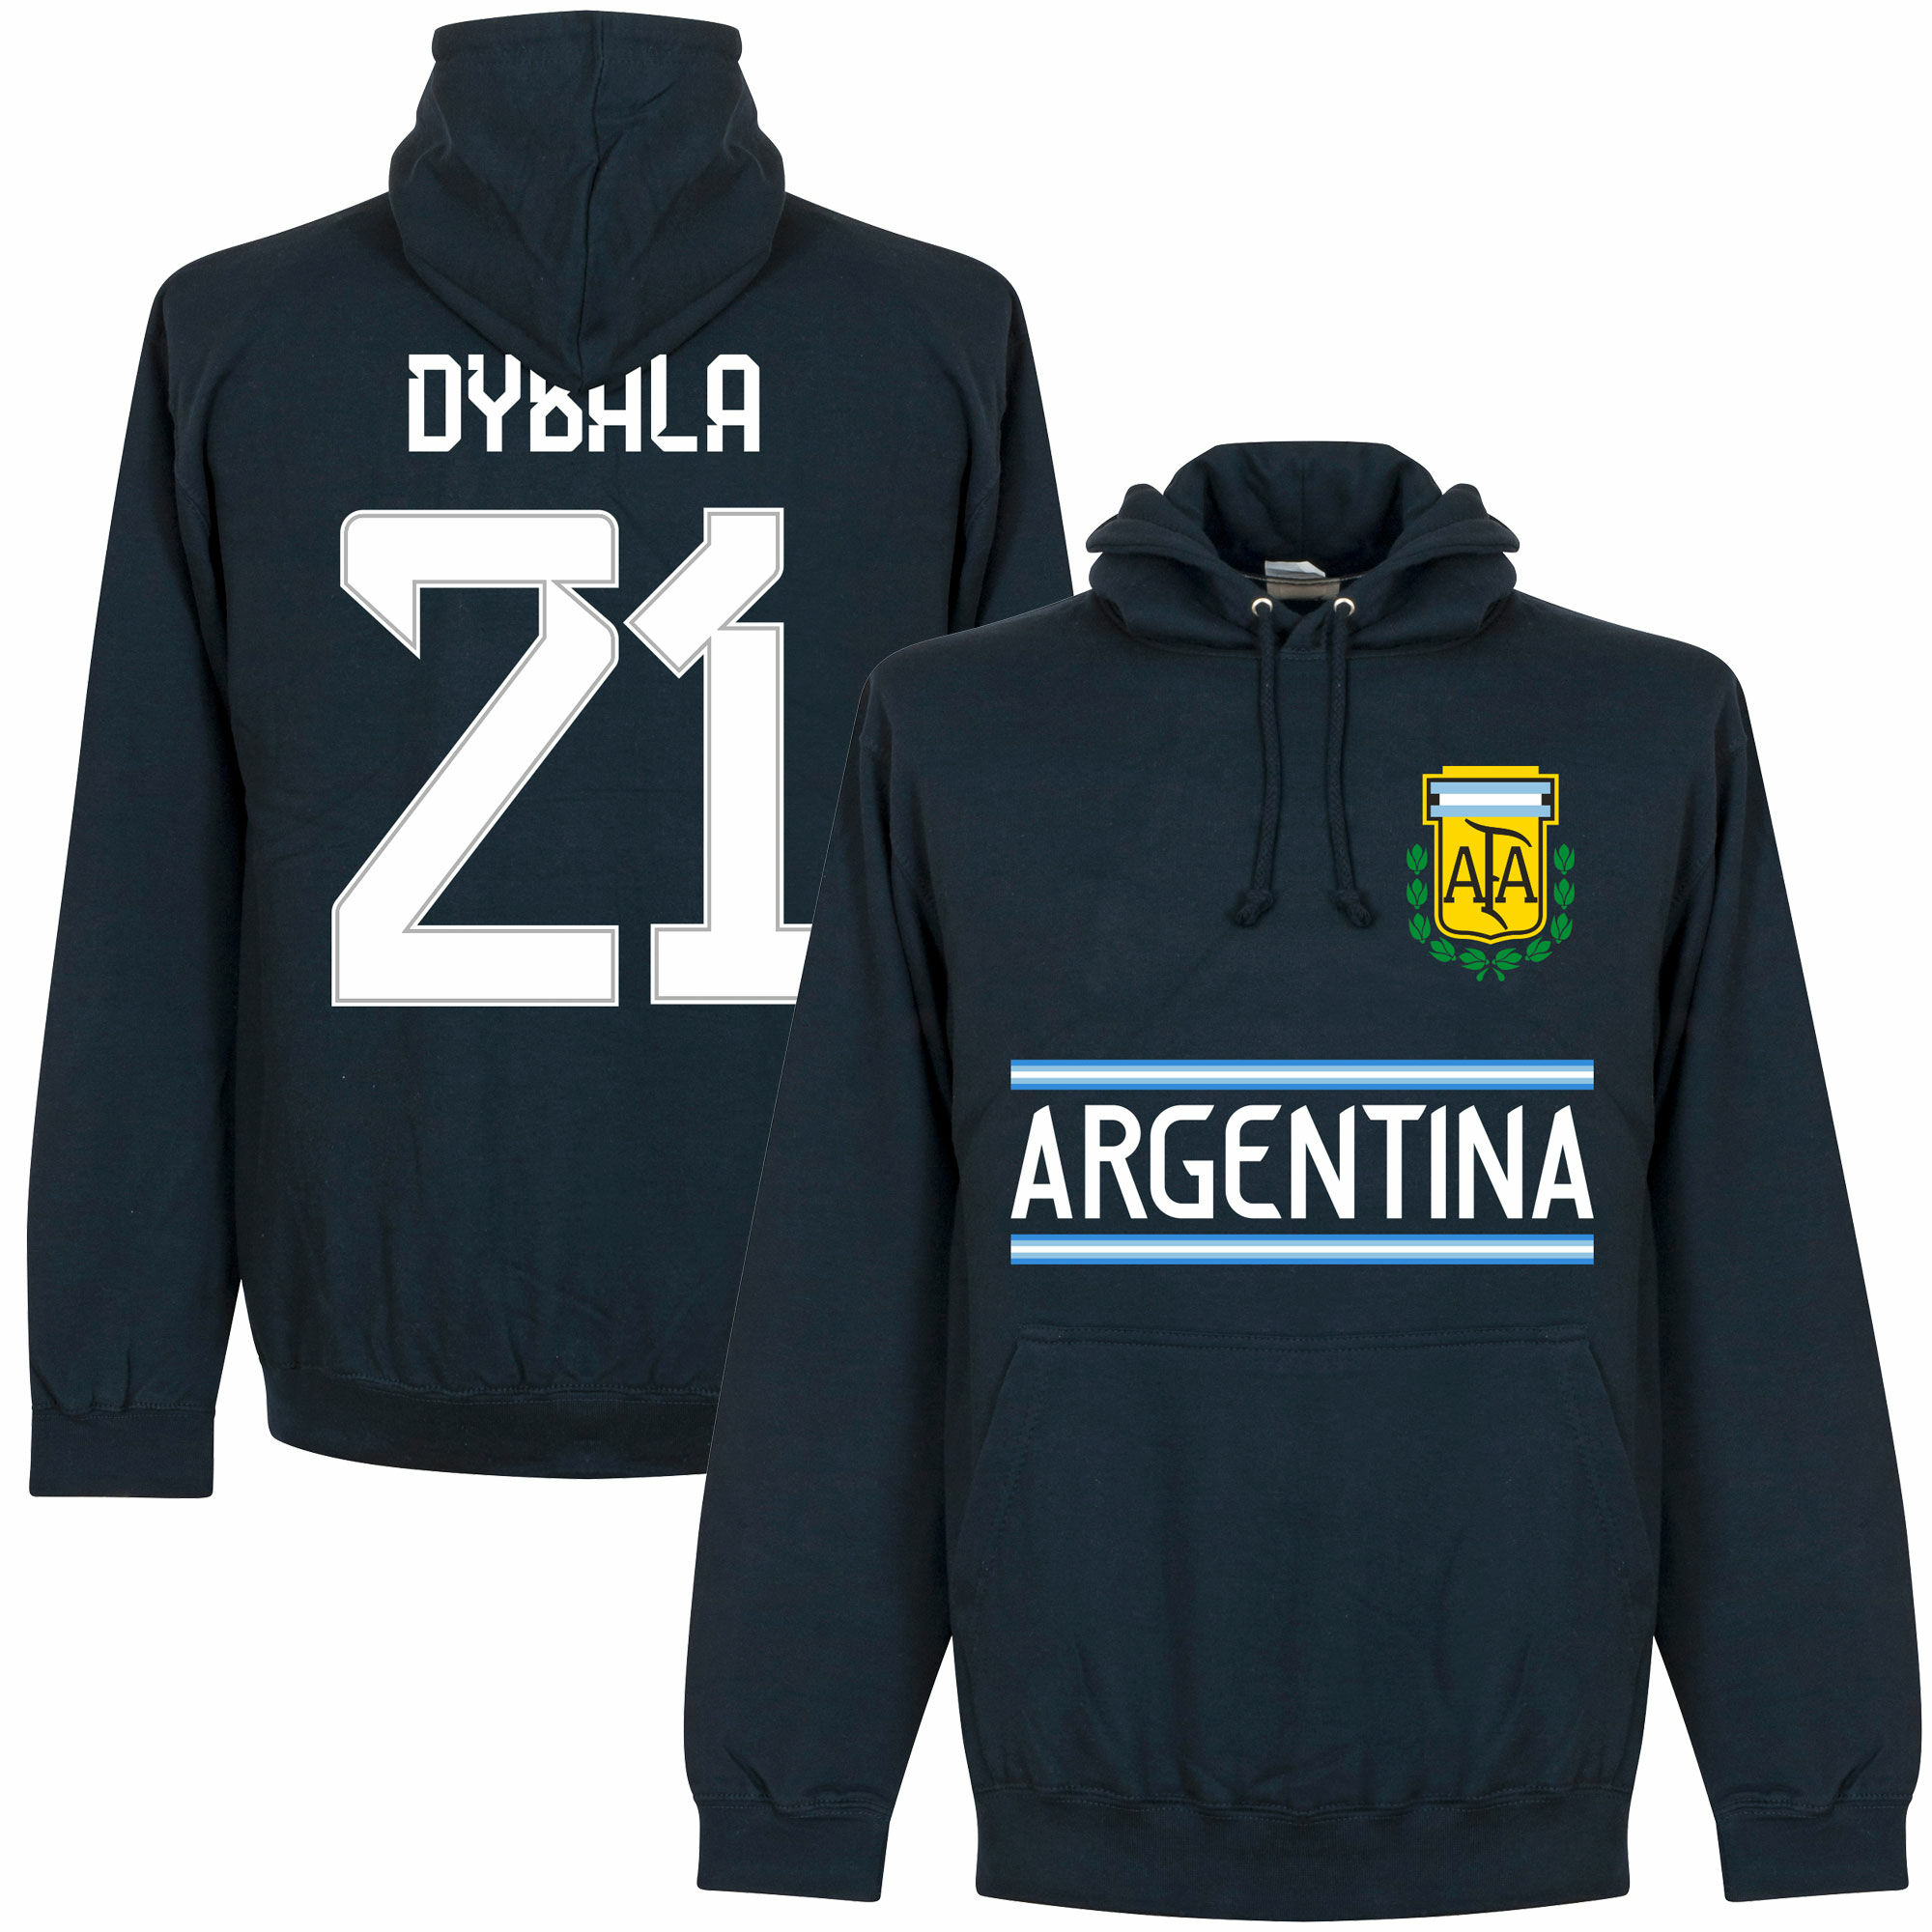 Argentina - Mikina s kapucí dětská - modrá, Paulo Dybala, číslo 21